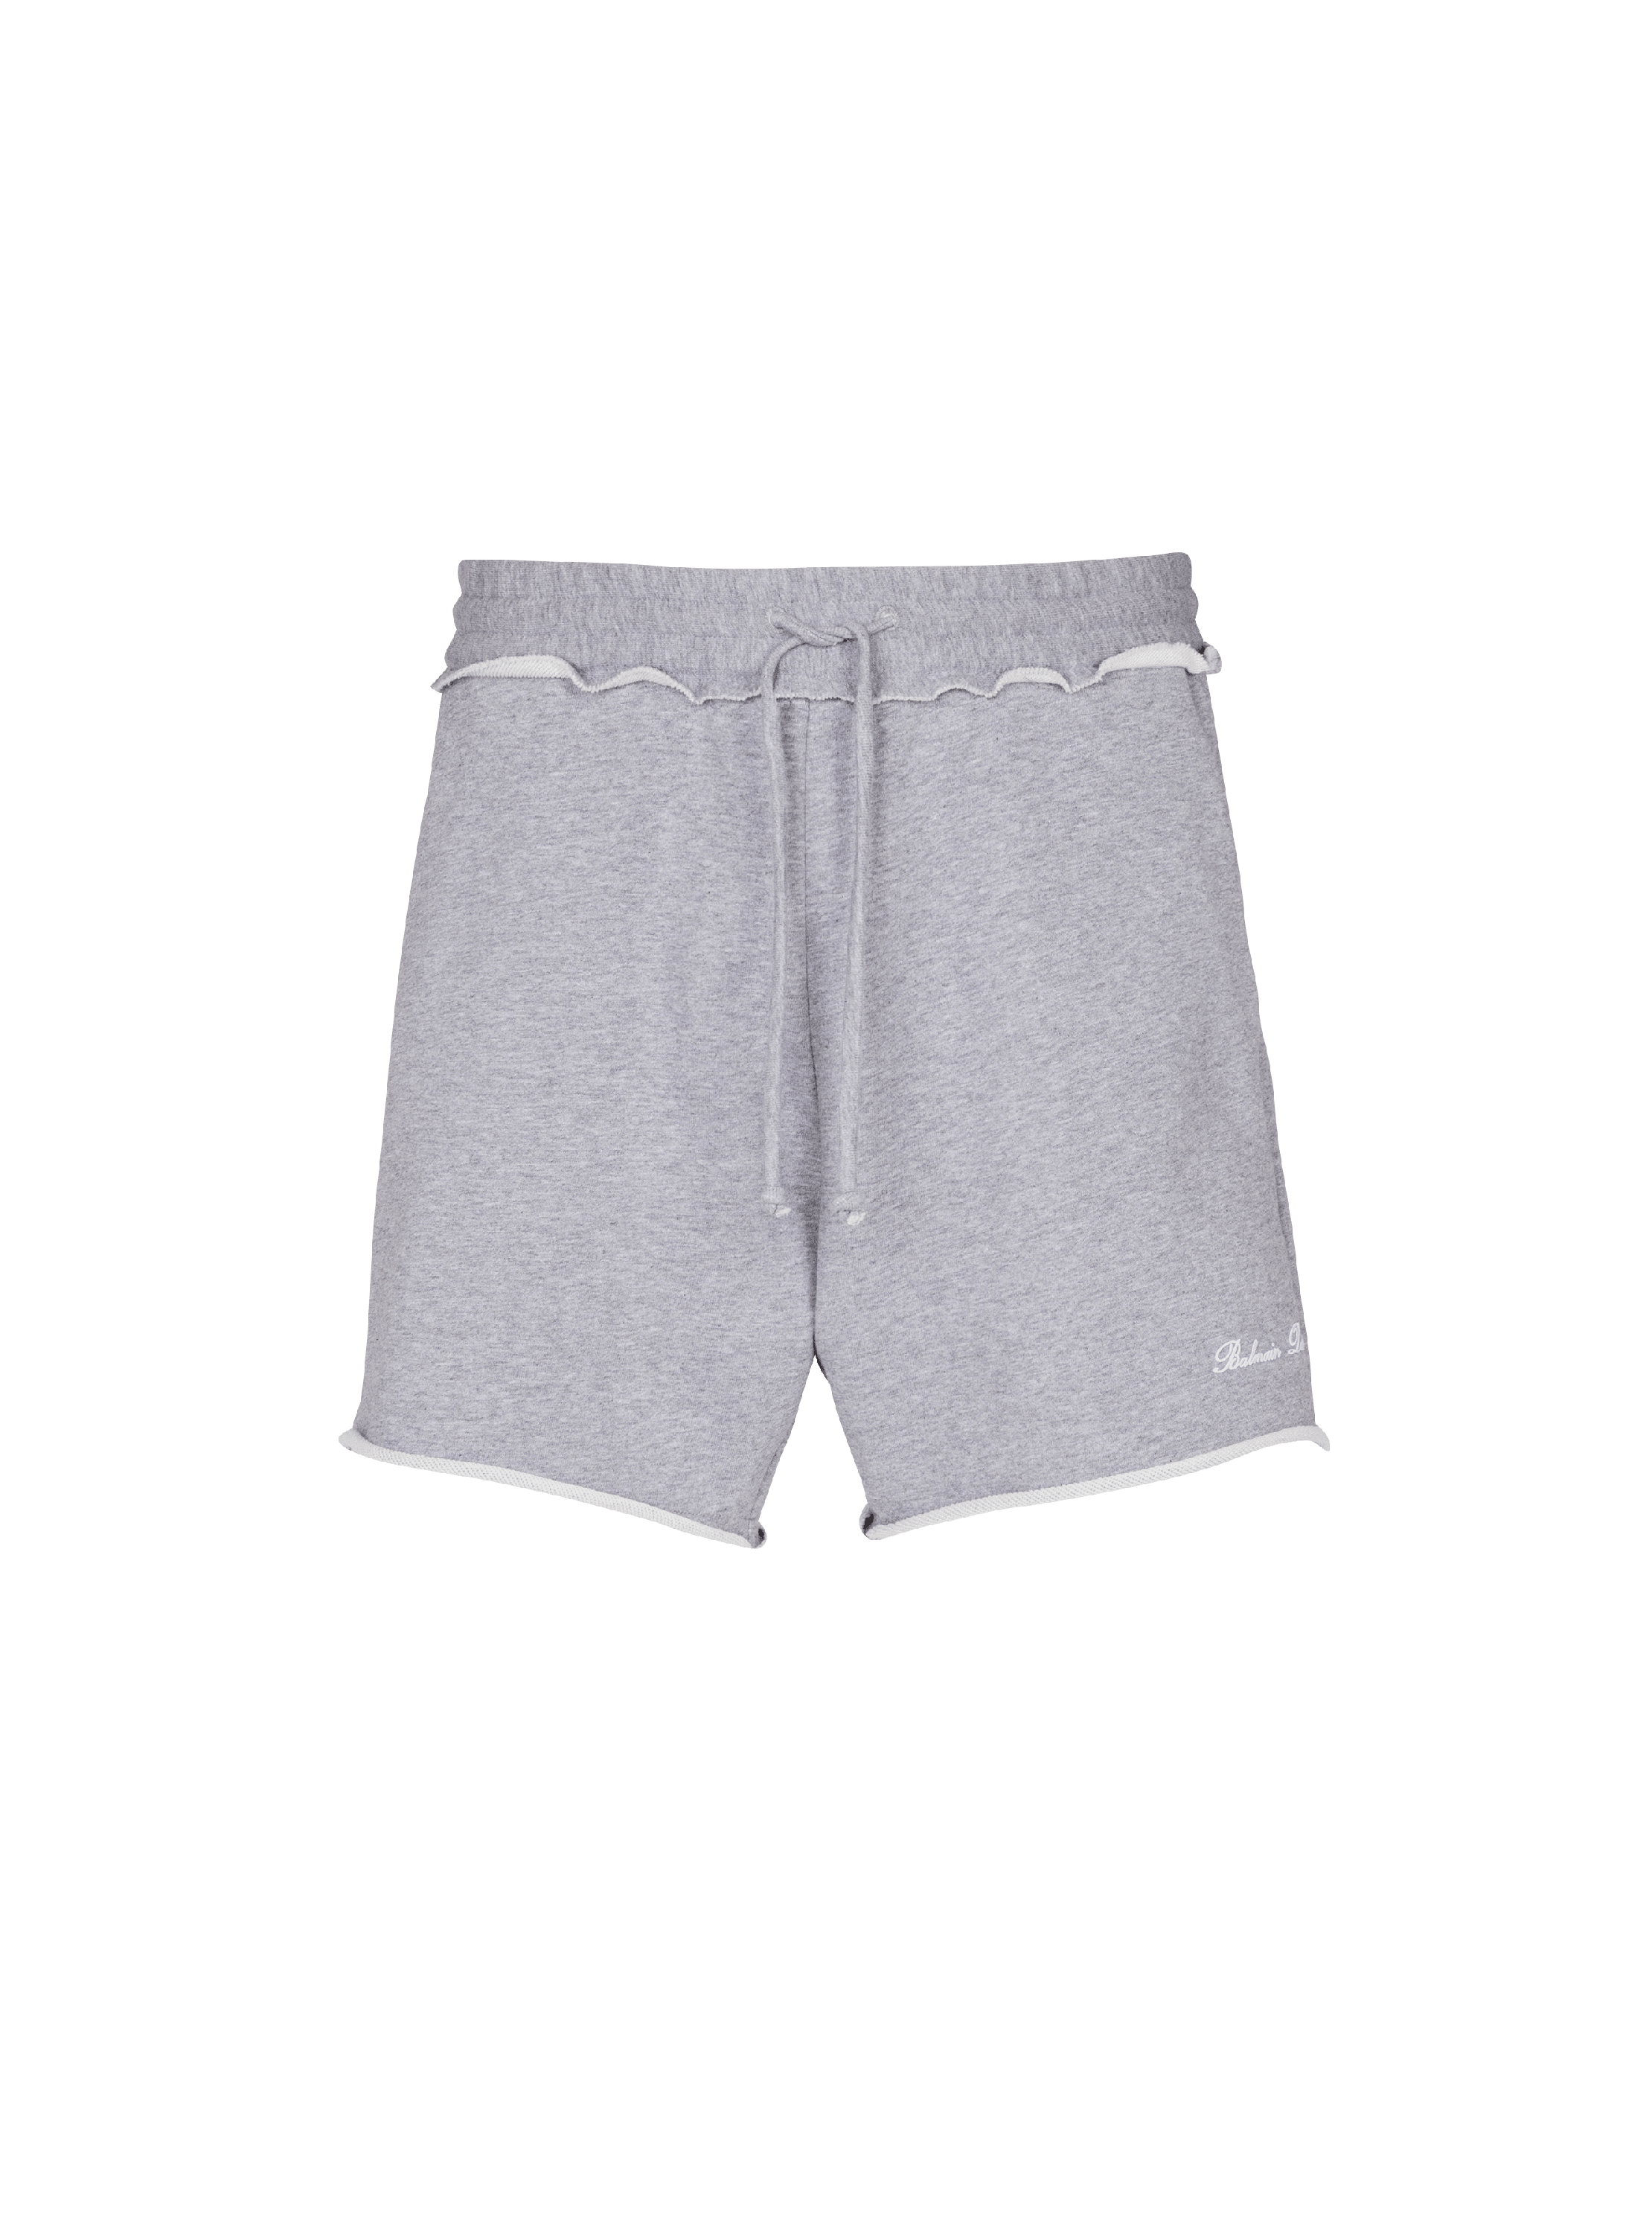 Jersey Balmain Signature shorts, grey, hi-res